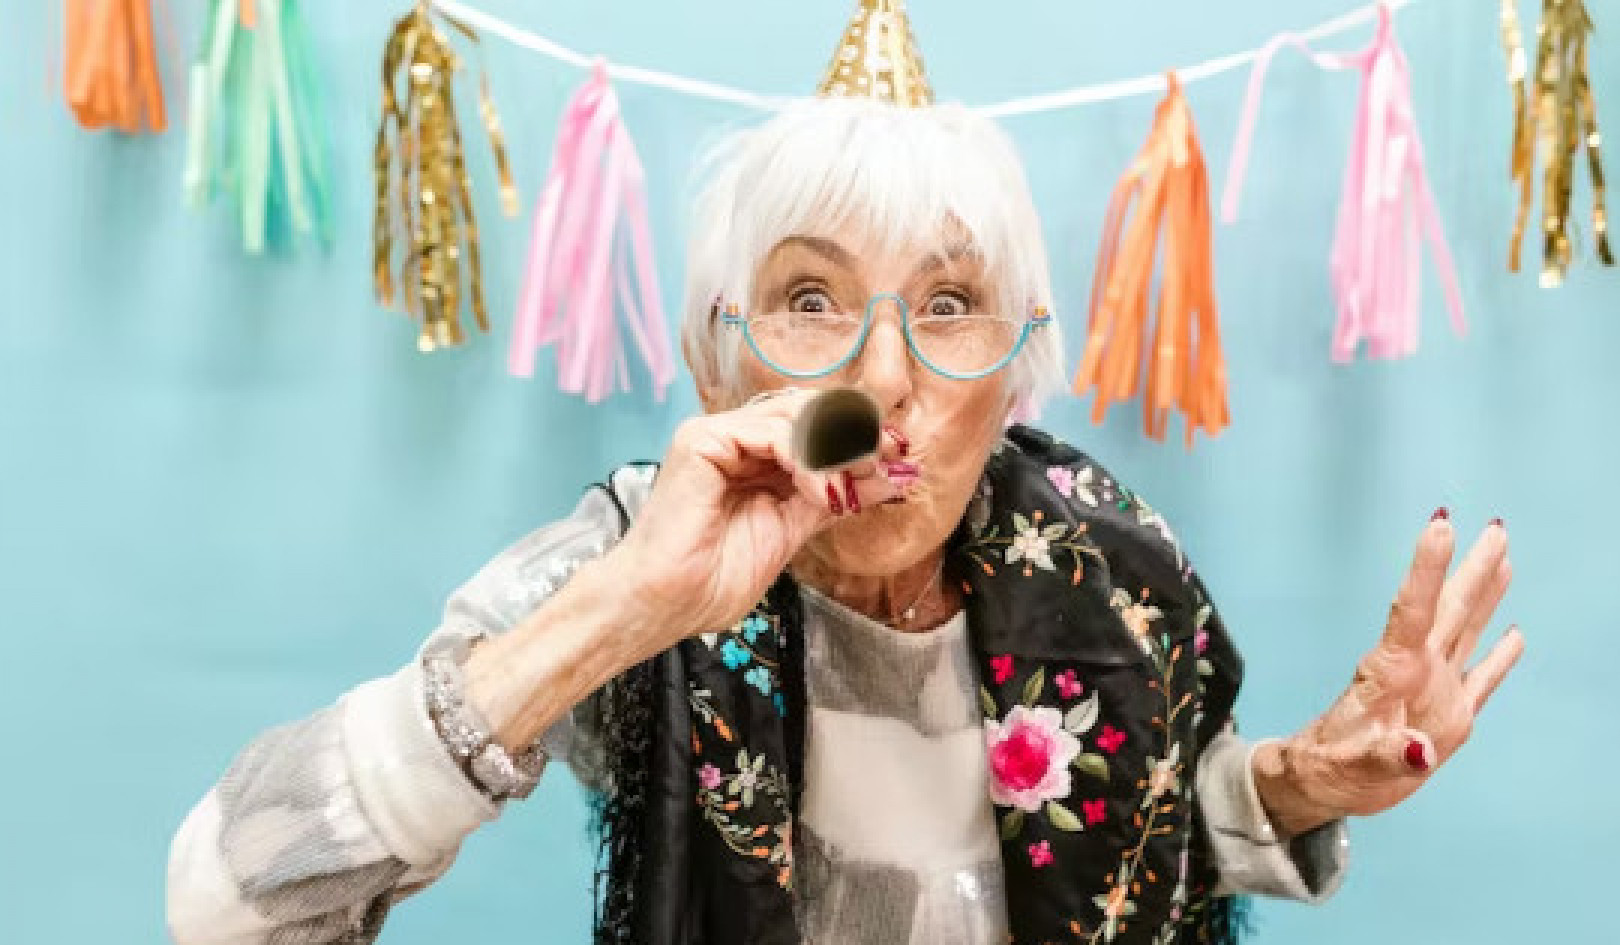 Voldoening vinden in pensionering: nieuwe ervaringen en verbindingen omarmen